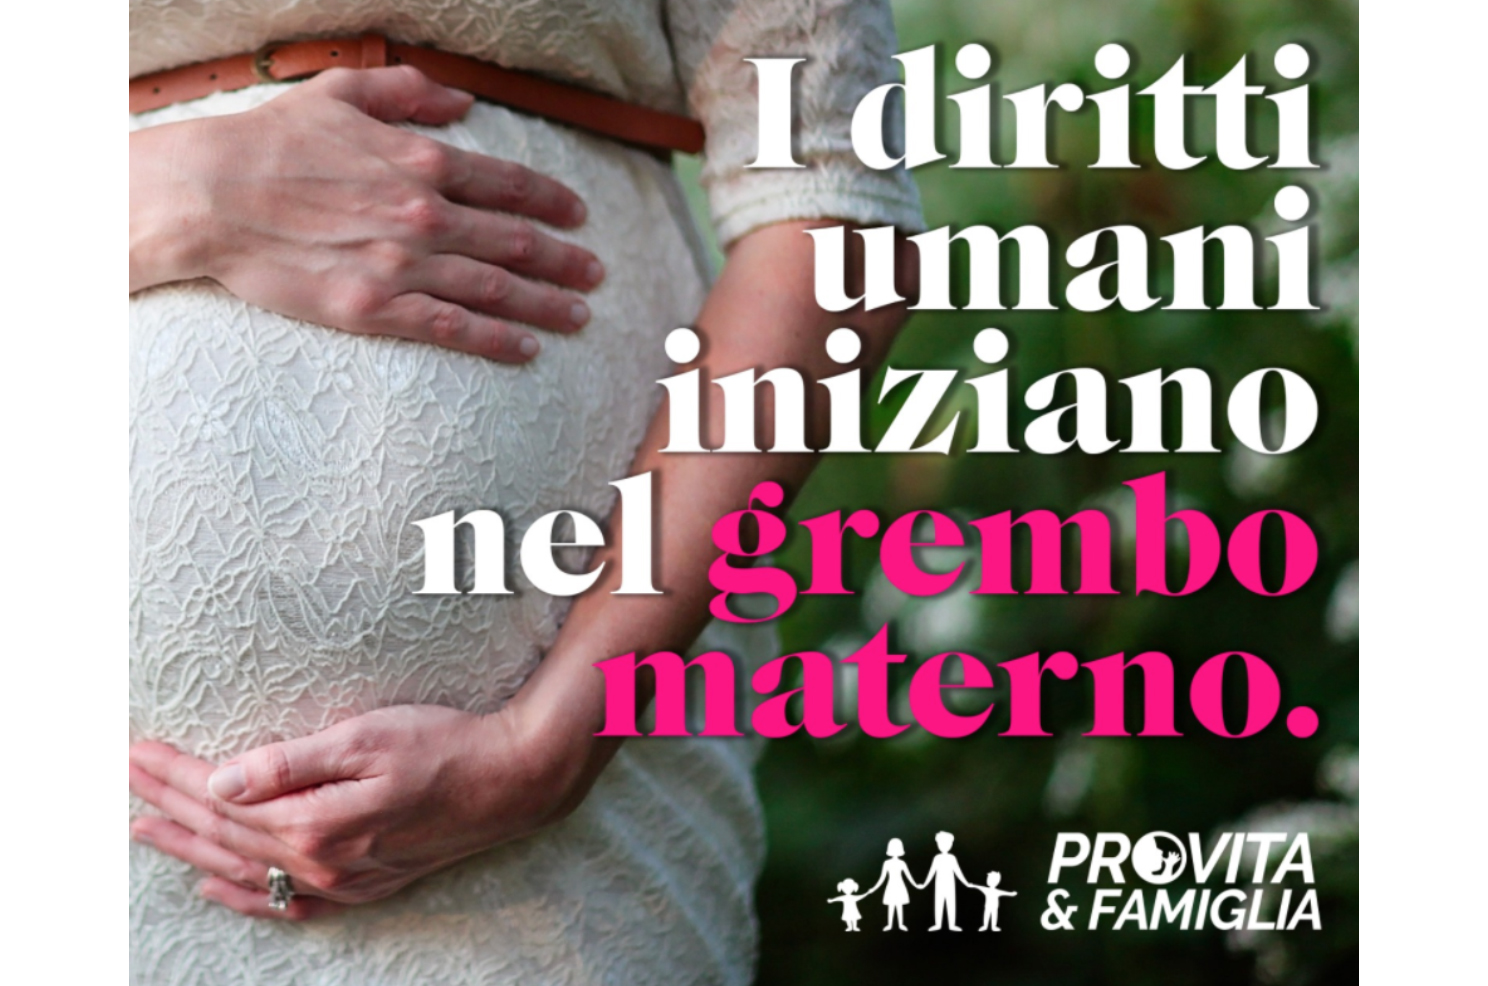 Le iniziative di Pro Vita & Famiglia in Toscana oggi e domani per la Festa della Mamma 1